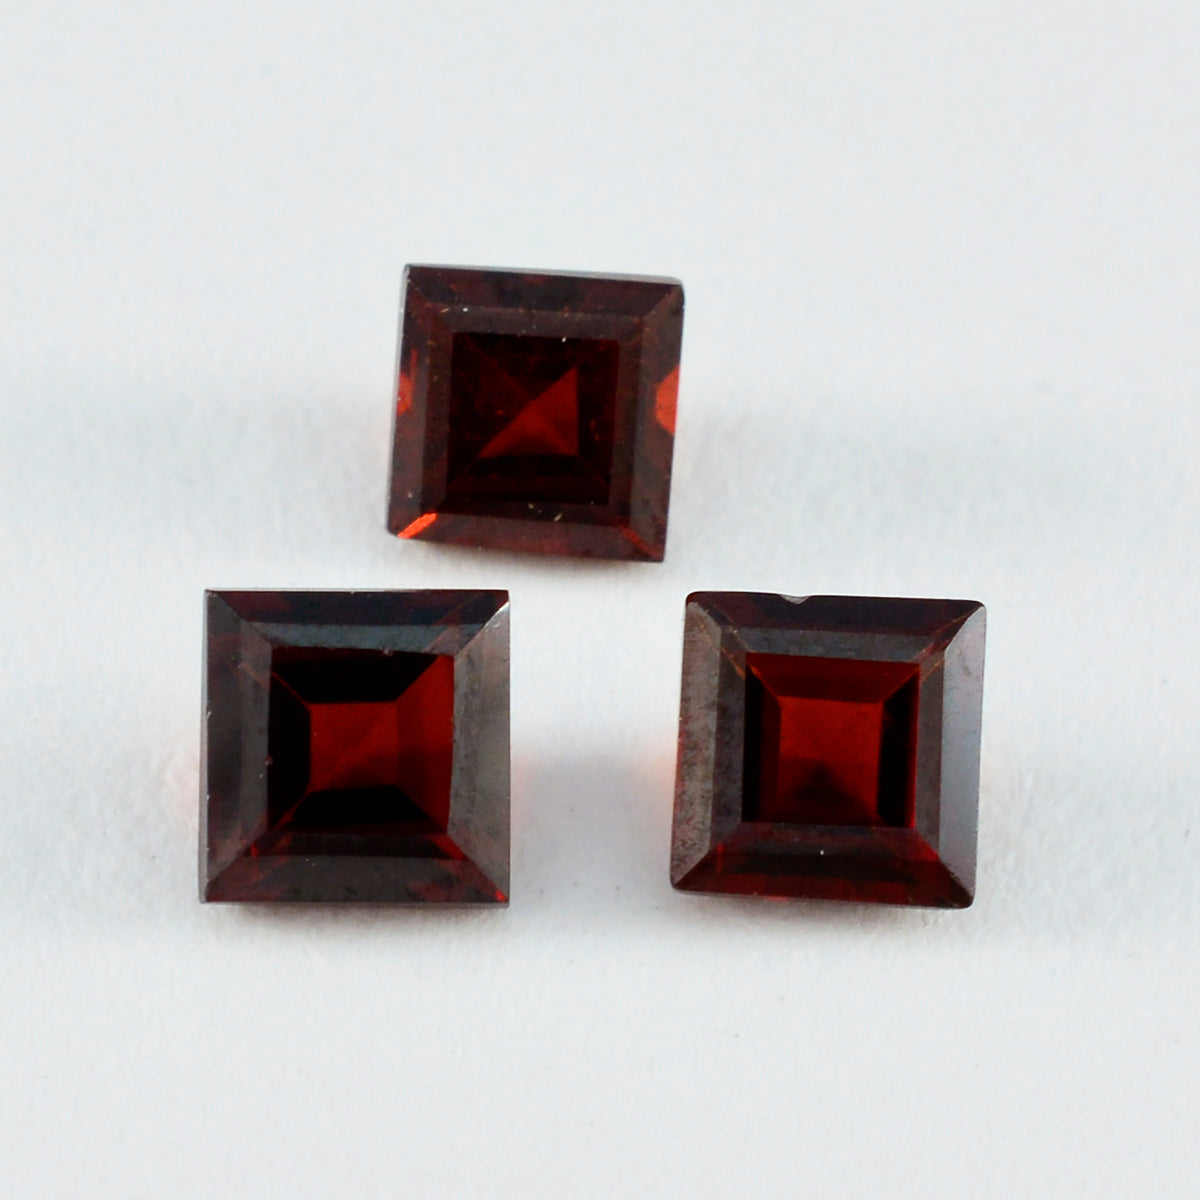 Riyogems 1 Stück natürlicher roter Granat, facettiert, 13 x 13 mm, quadratische Form, hübscher Qualitäts-Edelstein